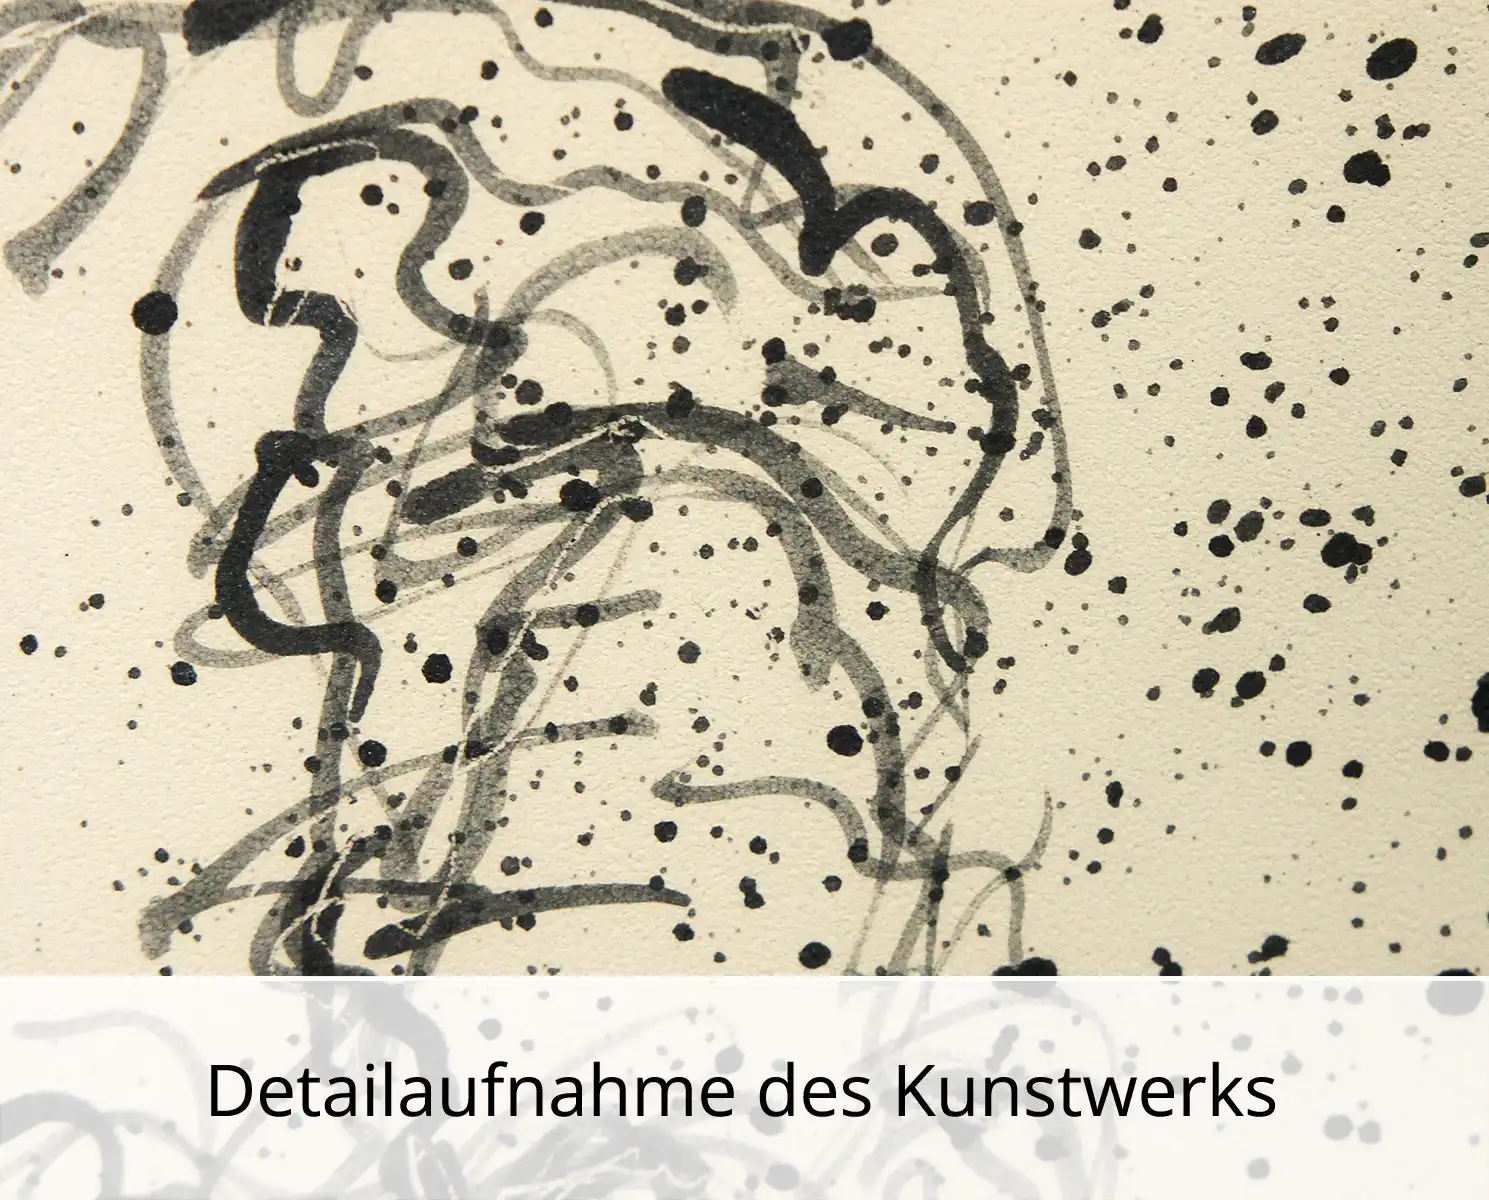 C. Blechschmidt: "Gesicht II", Original/Unikat, zeitgenössisches Gemälde